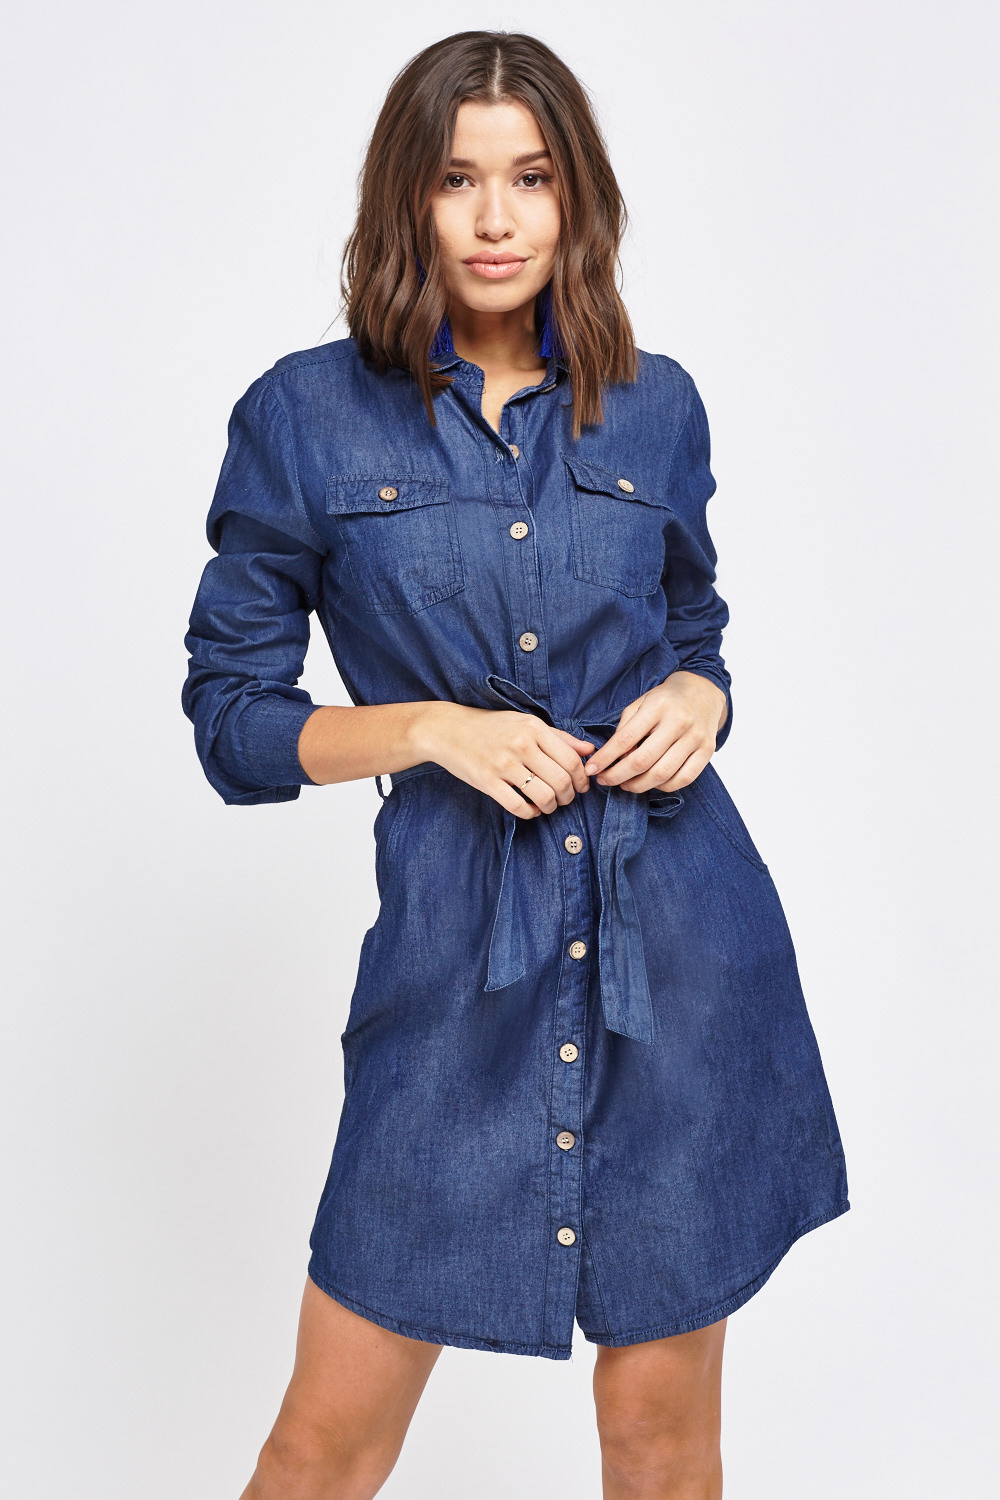 Denim Midi Shirt Dress - Just $7